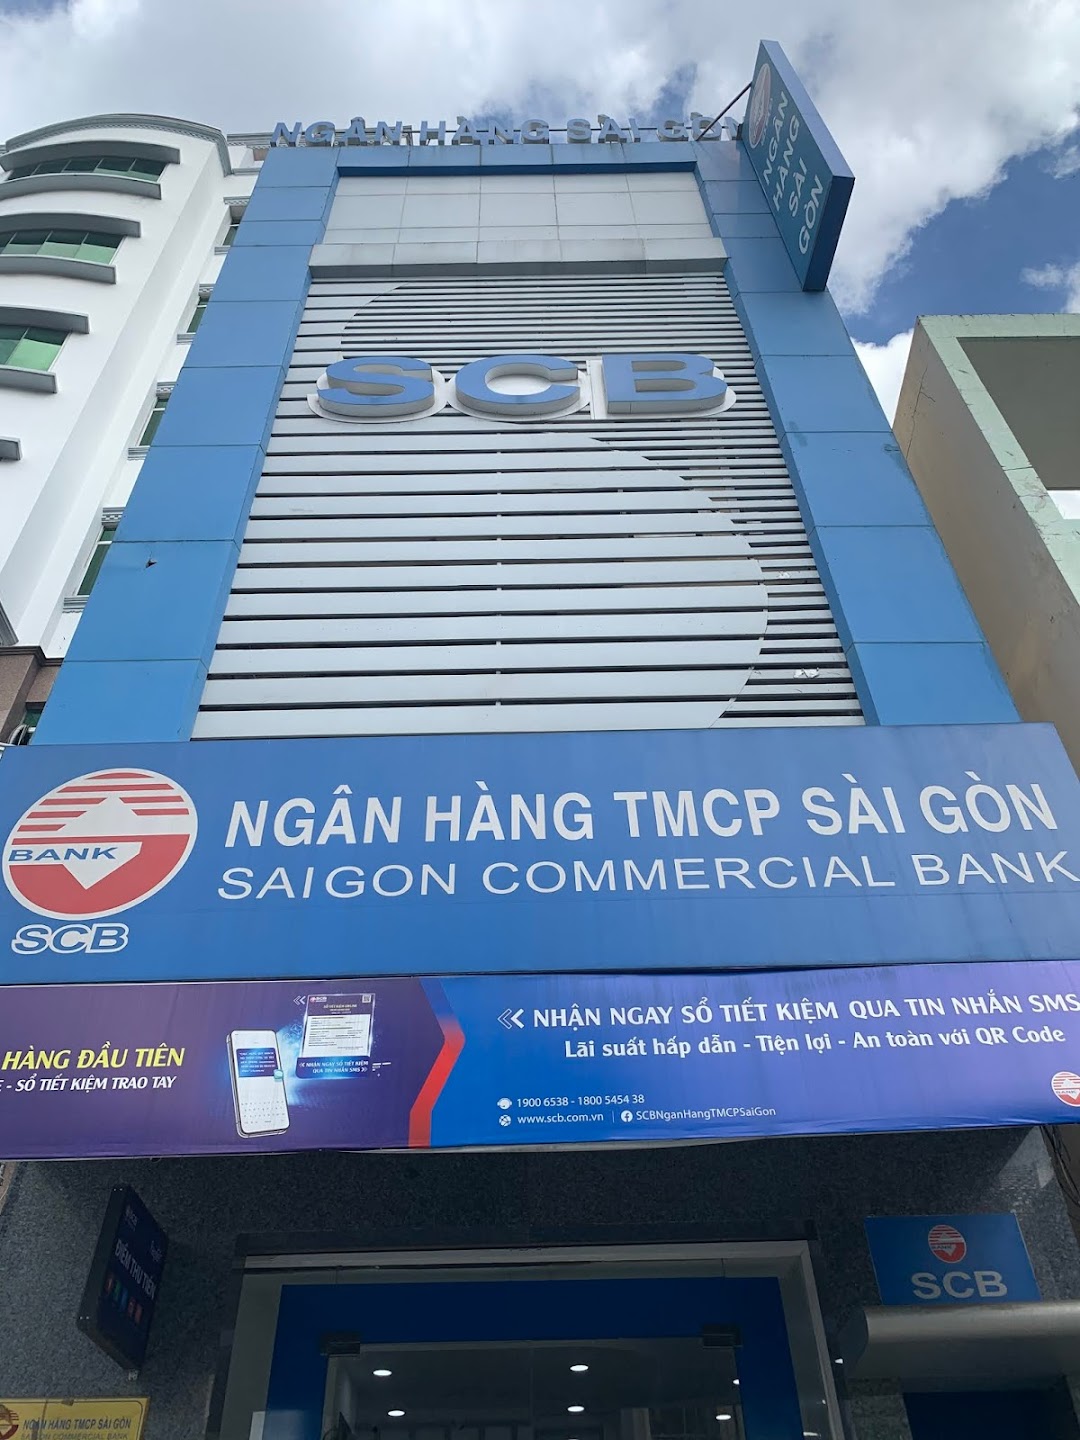 SCB Thanh Đa - Ngân hàng TMCP Sài Gòn